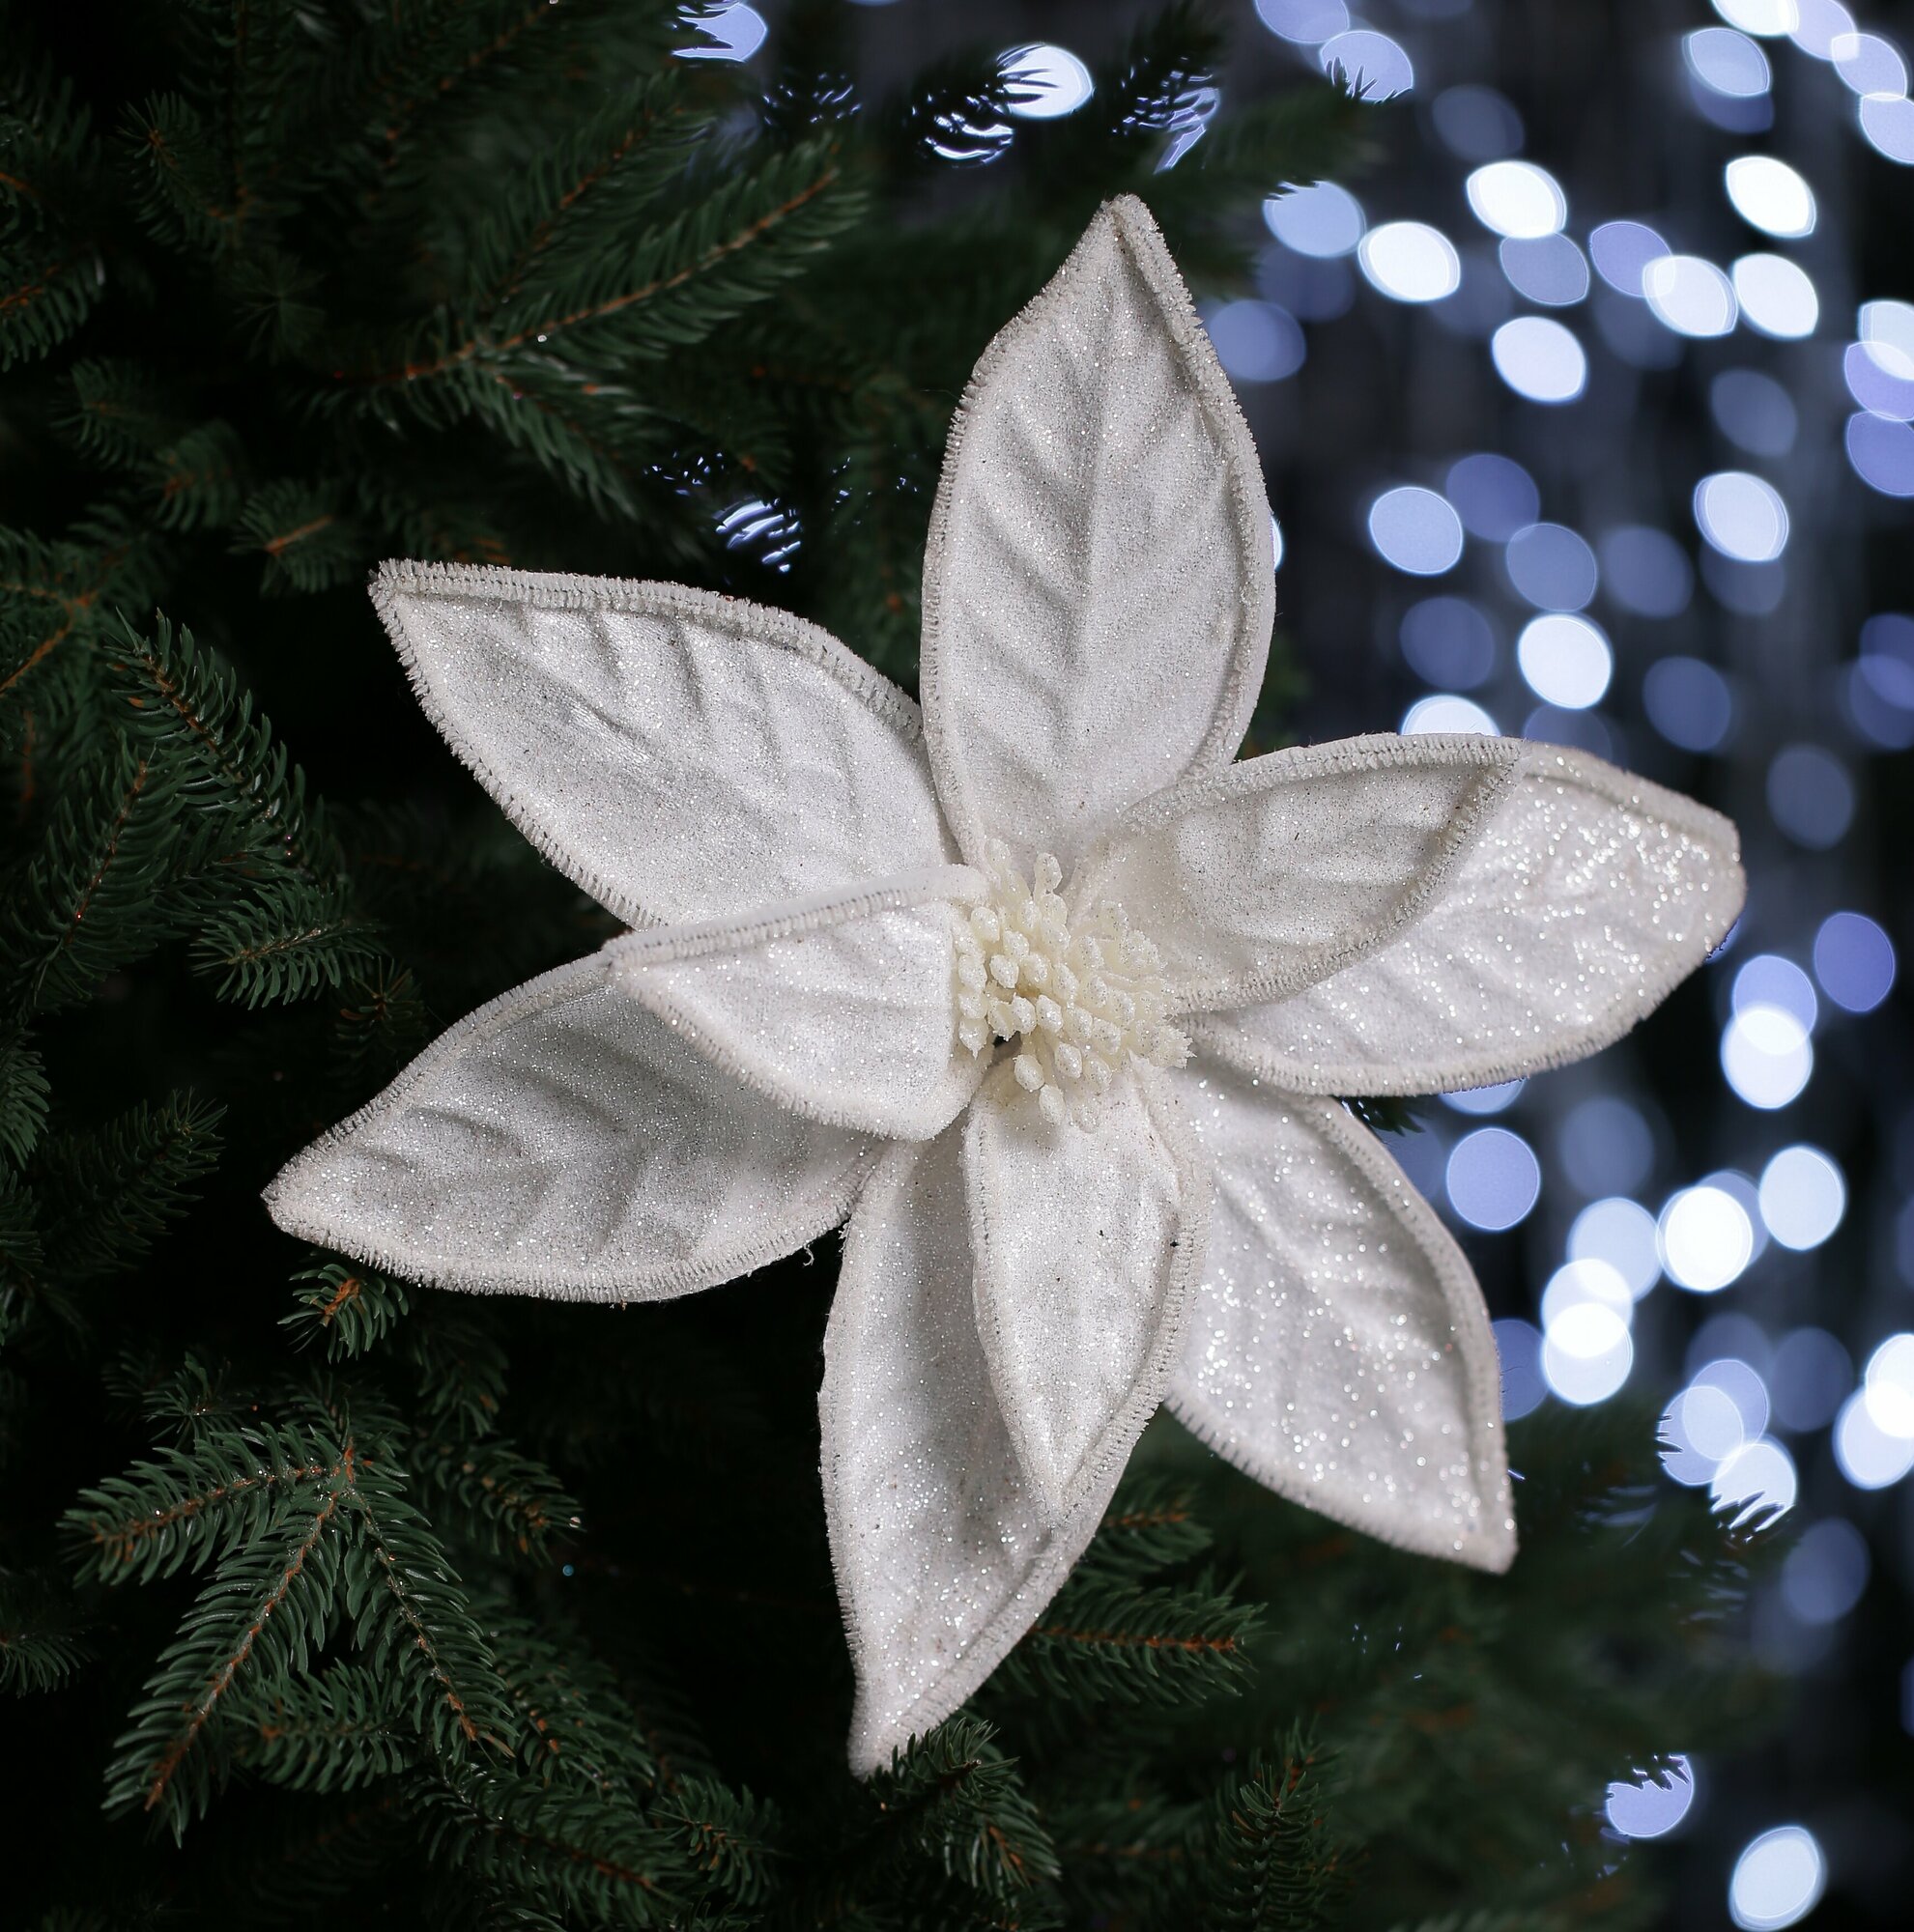 Цветок искусственный декоративный новогодний, диаметр 28 см, цвет белый